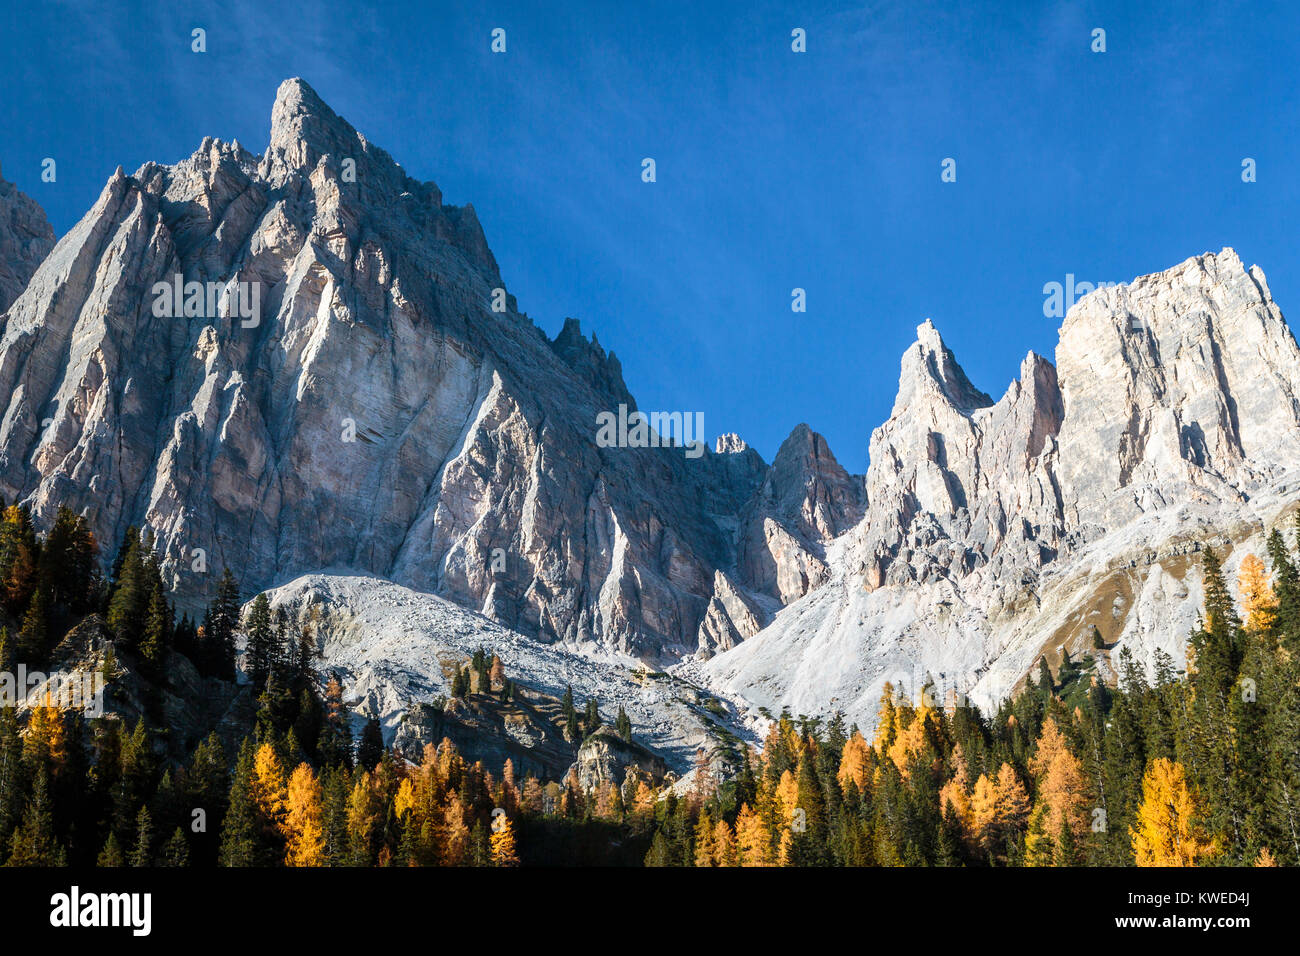 The Dolomite Alps with fall foliage color near Auronzo di Cadore, Misurina, Belluno, Italy, Europe. Stock Photo